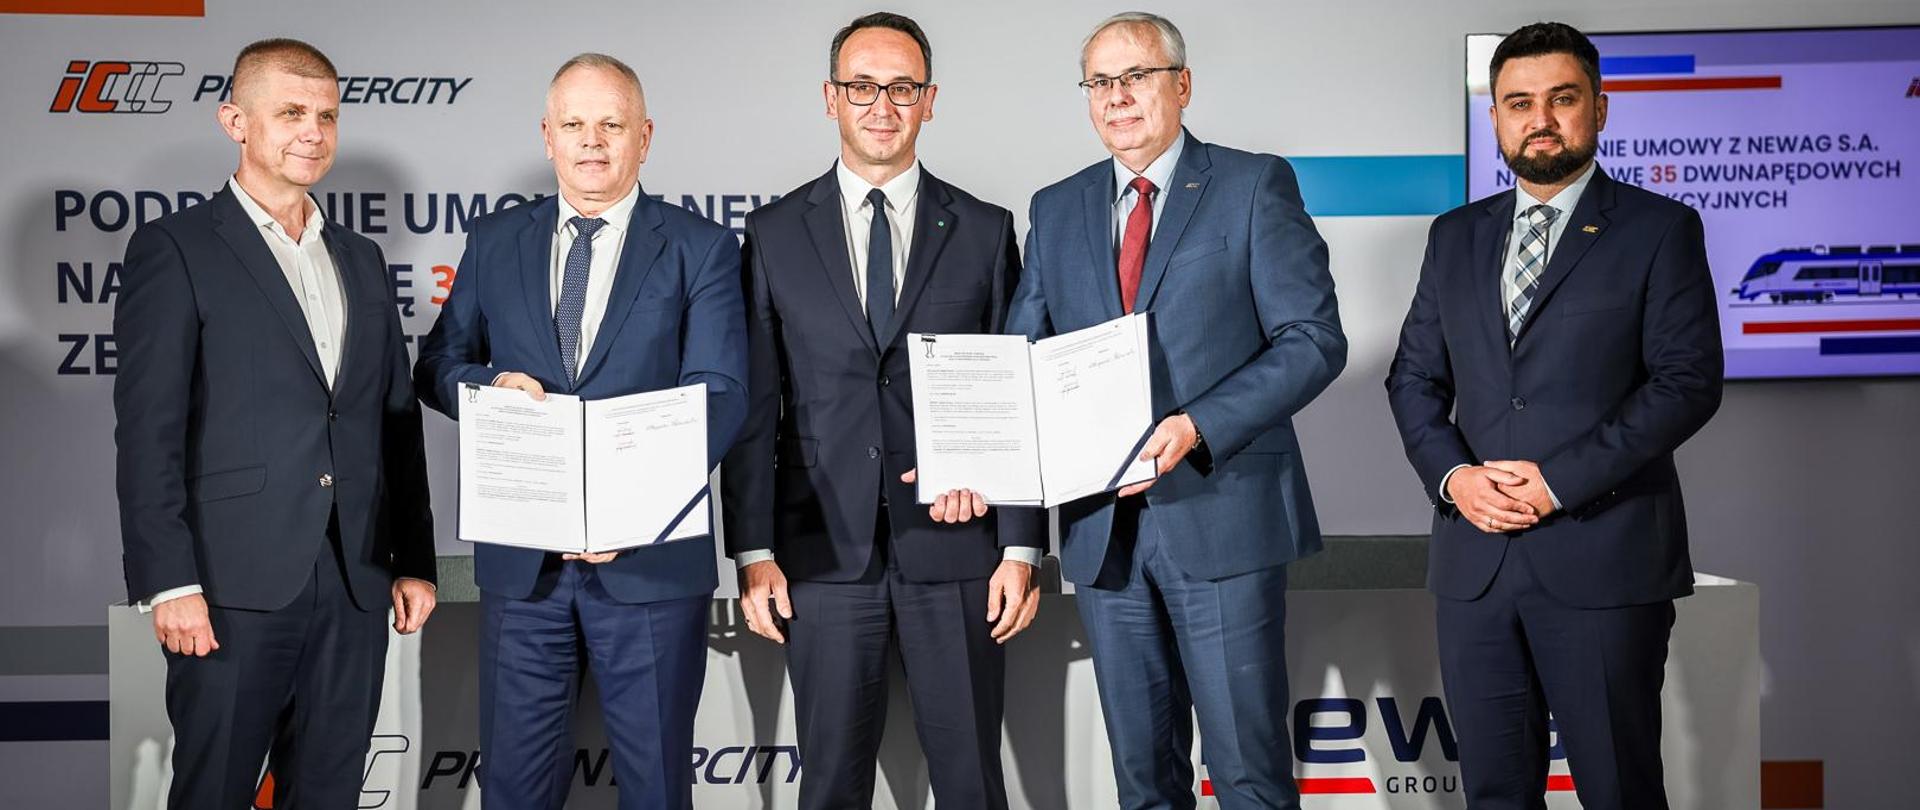 Minister infrastruktury Dariusz Klimczak po podpisaniu przez PKP Intercity umowy z firmą NEWAG SA na dostawę 35 dwunapędowych zespołów trakcyjnych